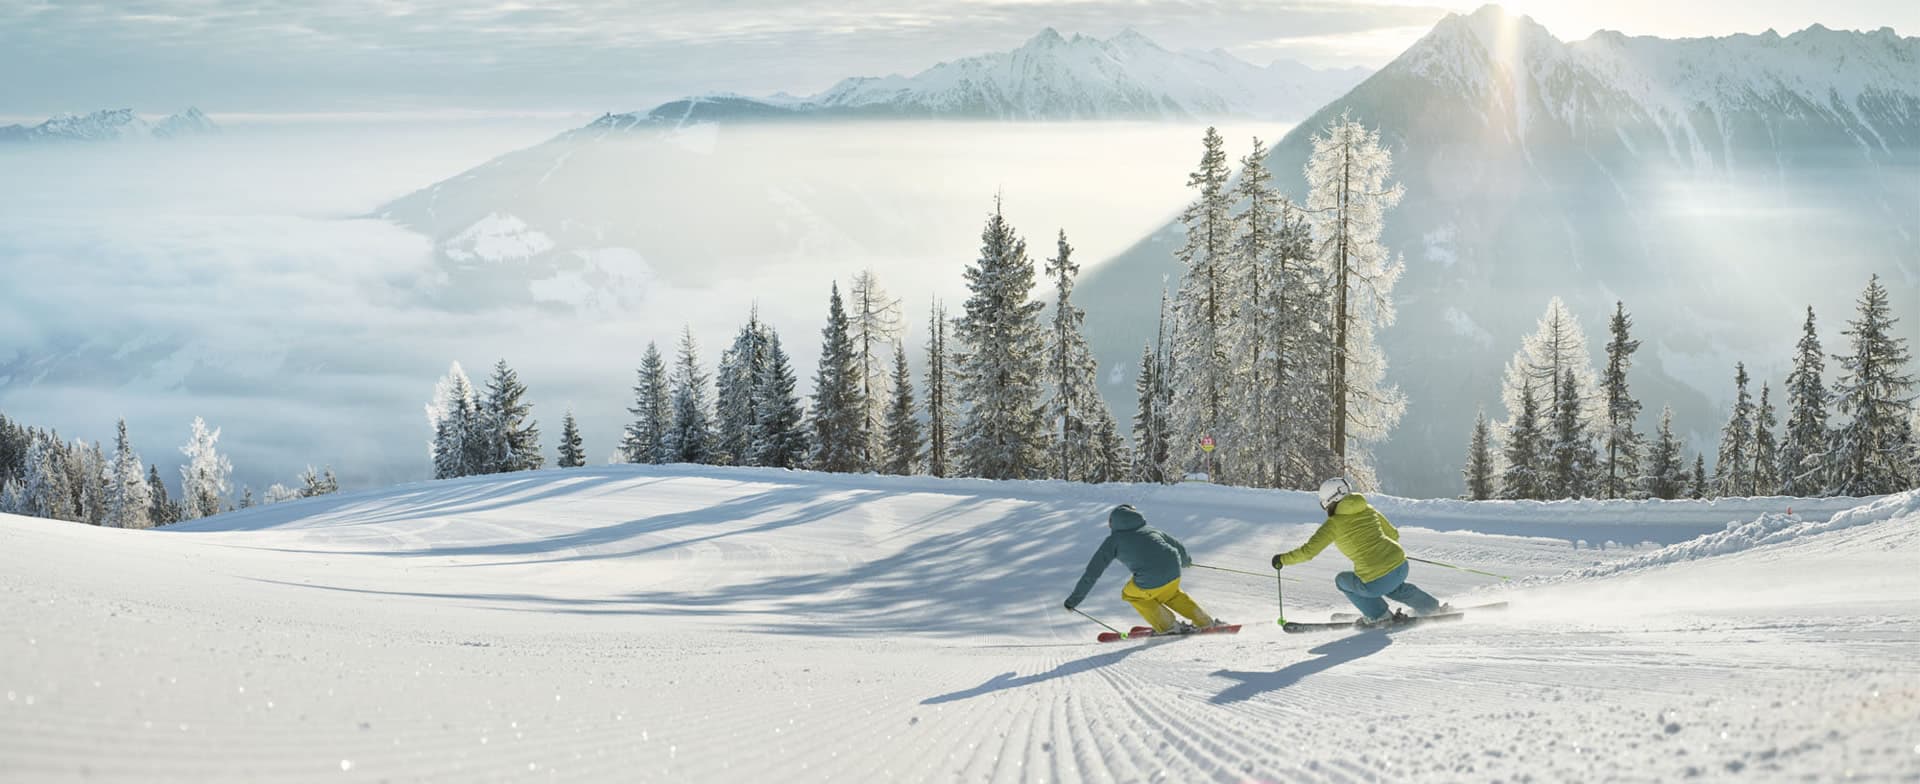 Skiurlaub in Ski amadé in der Region Schladming-Dachstein und mittendrin der Skiberg Hochwurzen